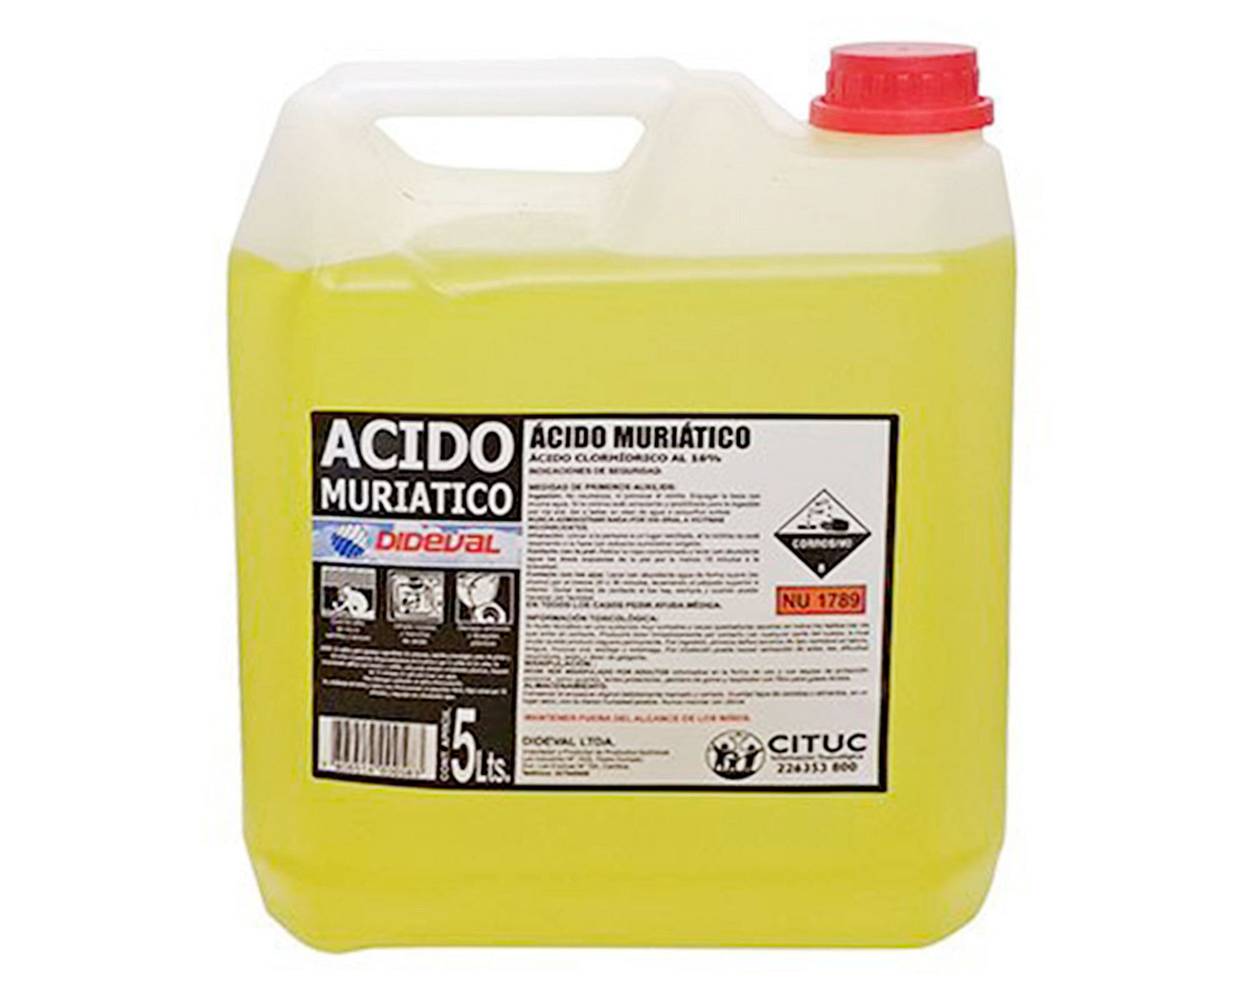 Dideval acido muriatico (5 litros)